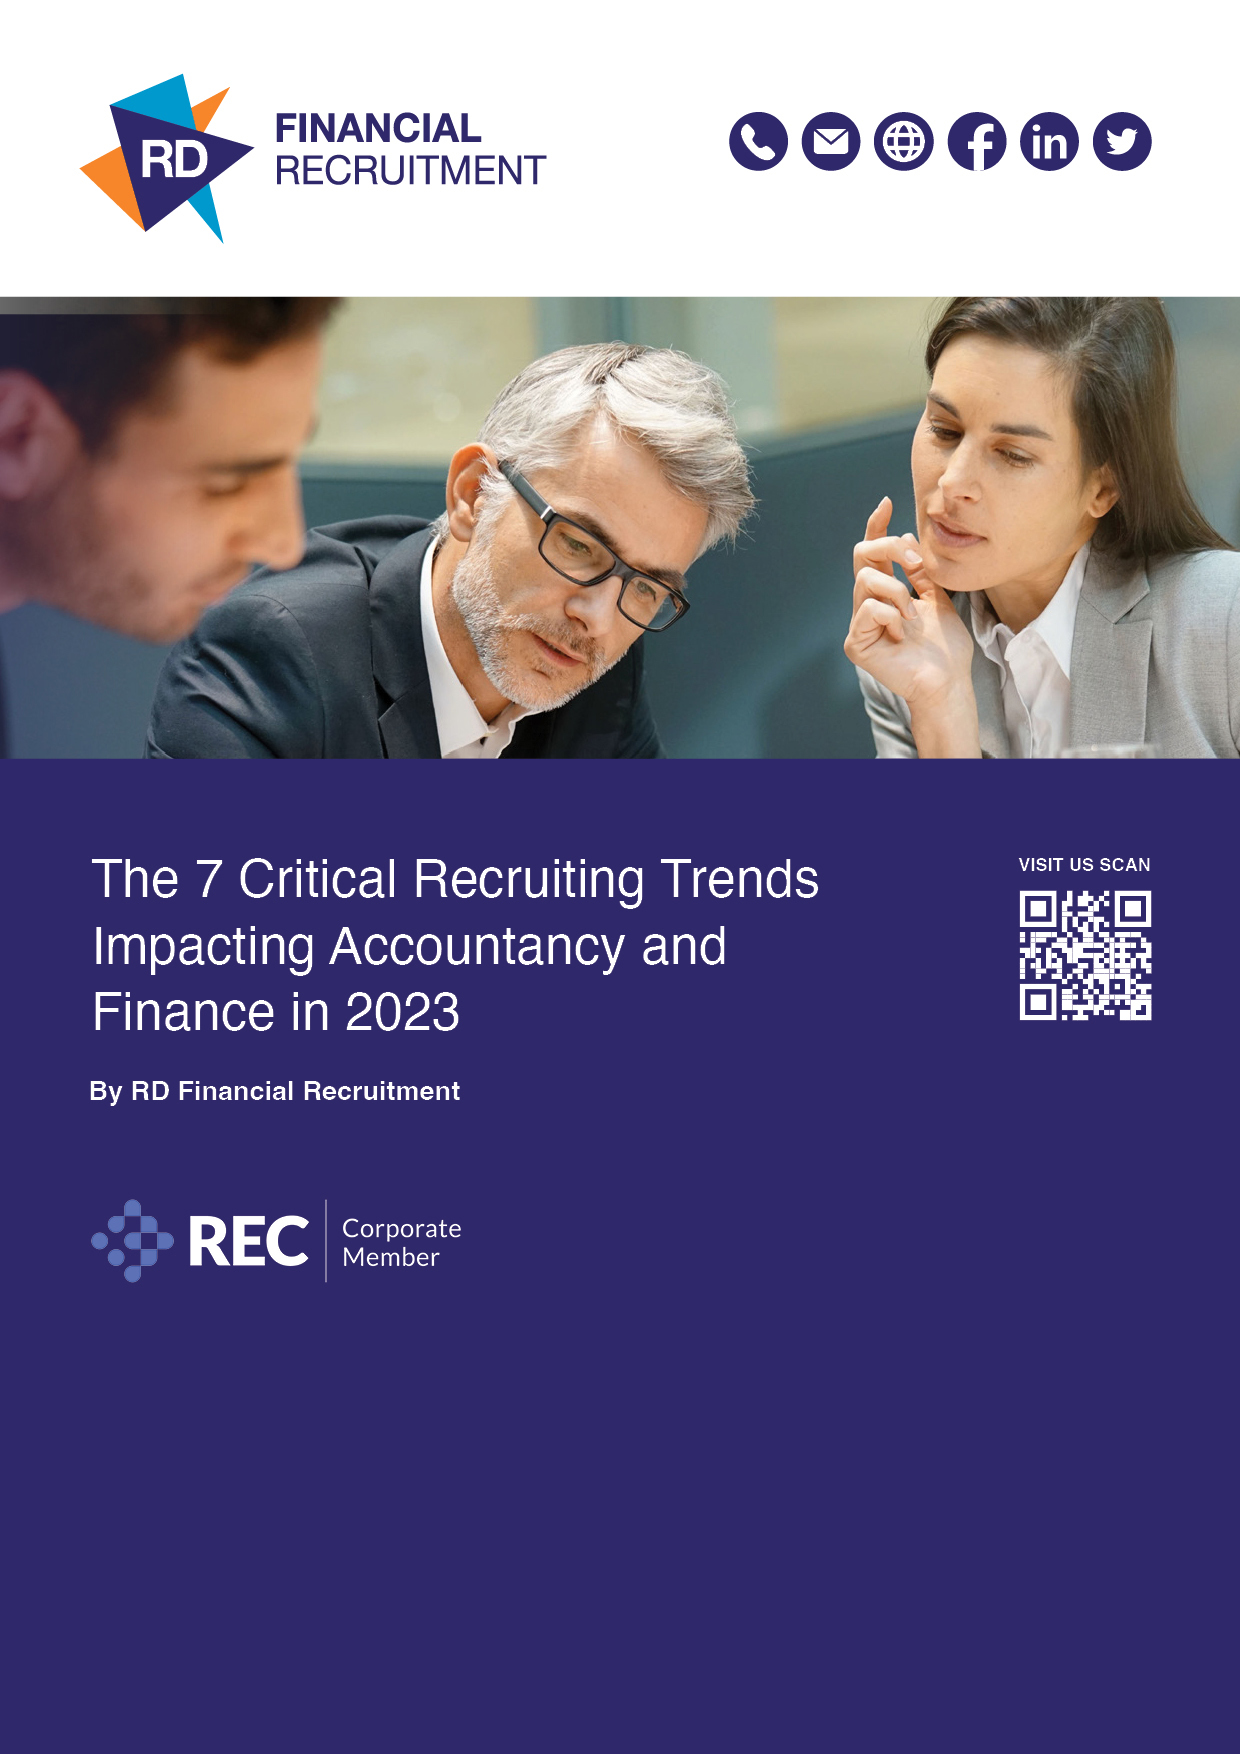 7 Critical Recruiting Trends